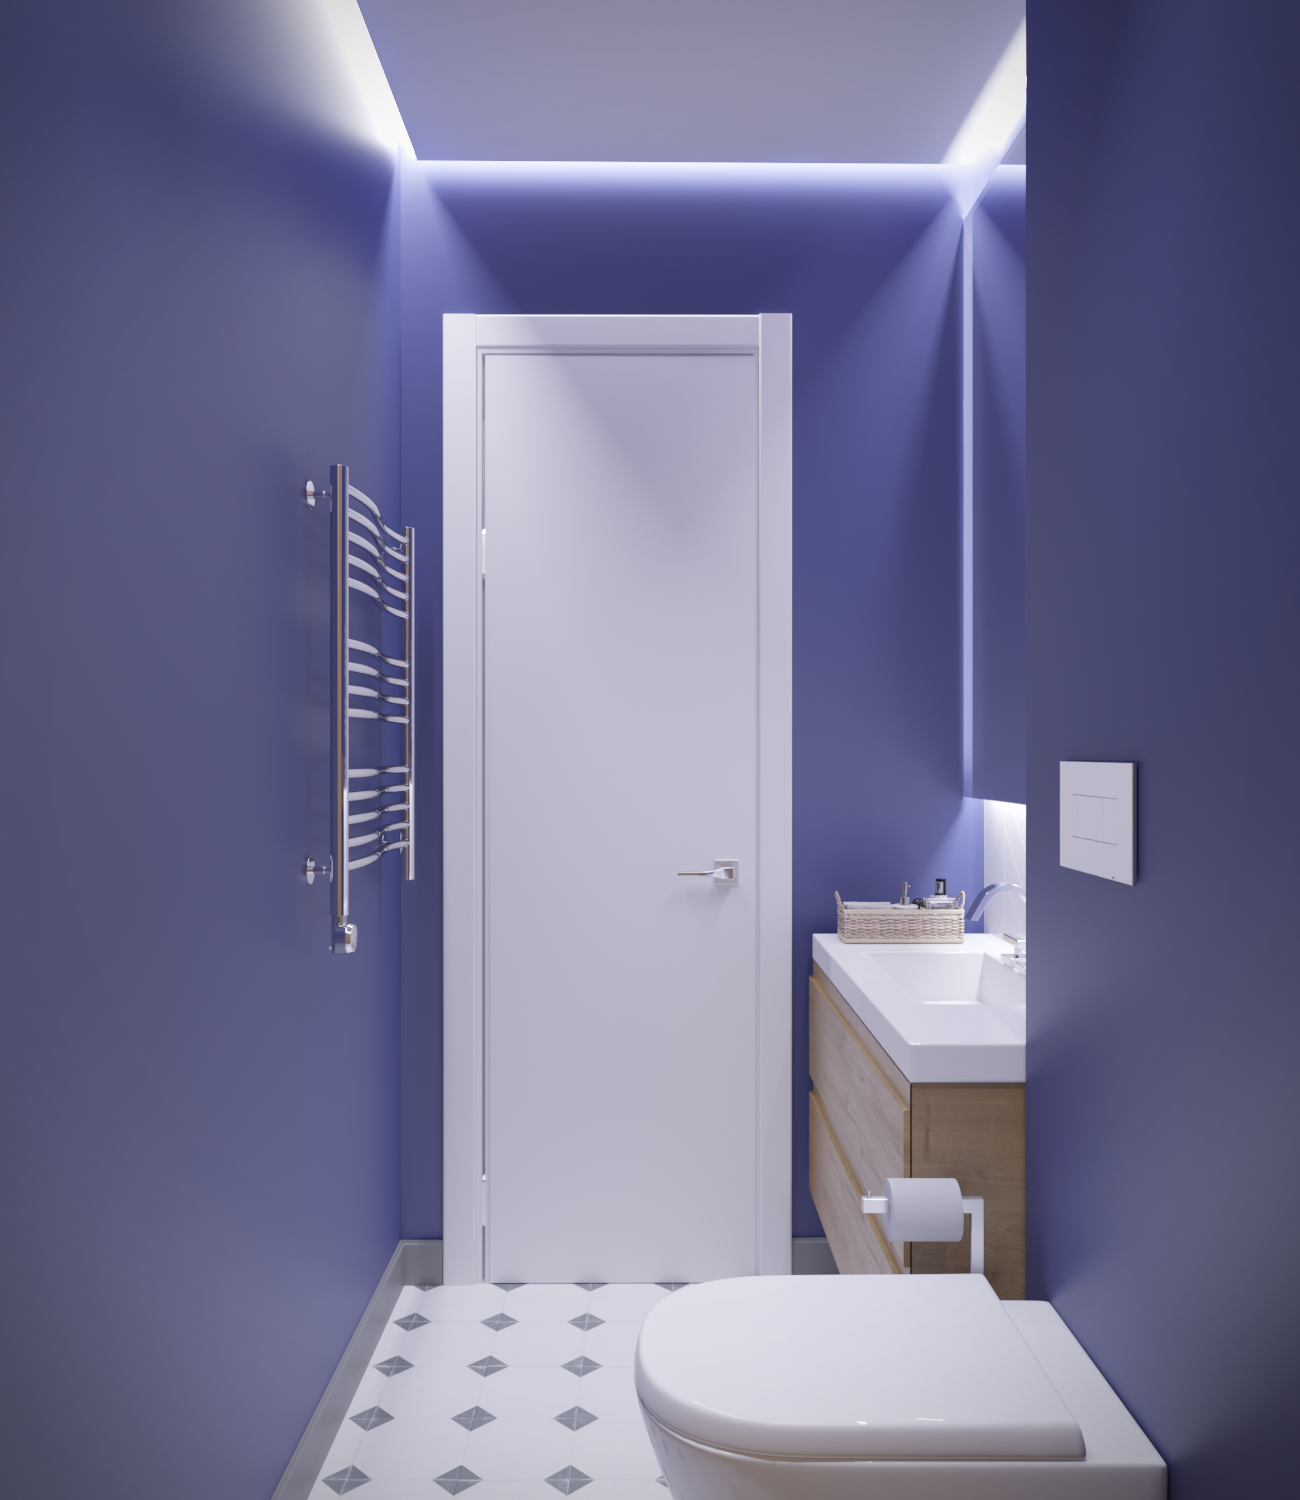 Освещение в туалете: виды и расположение